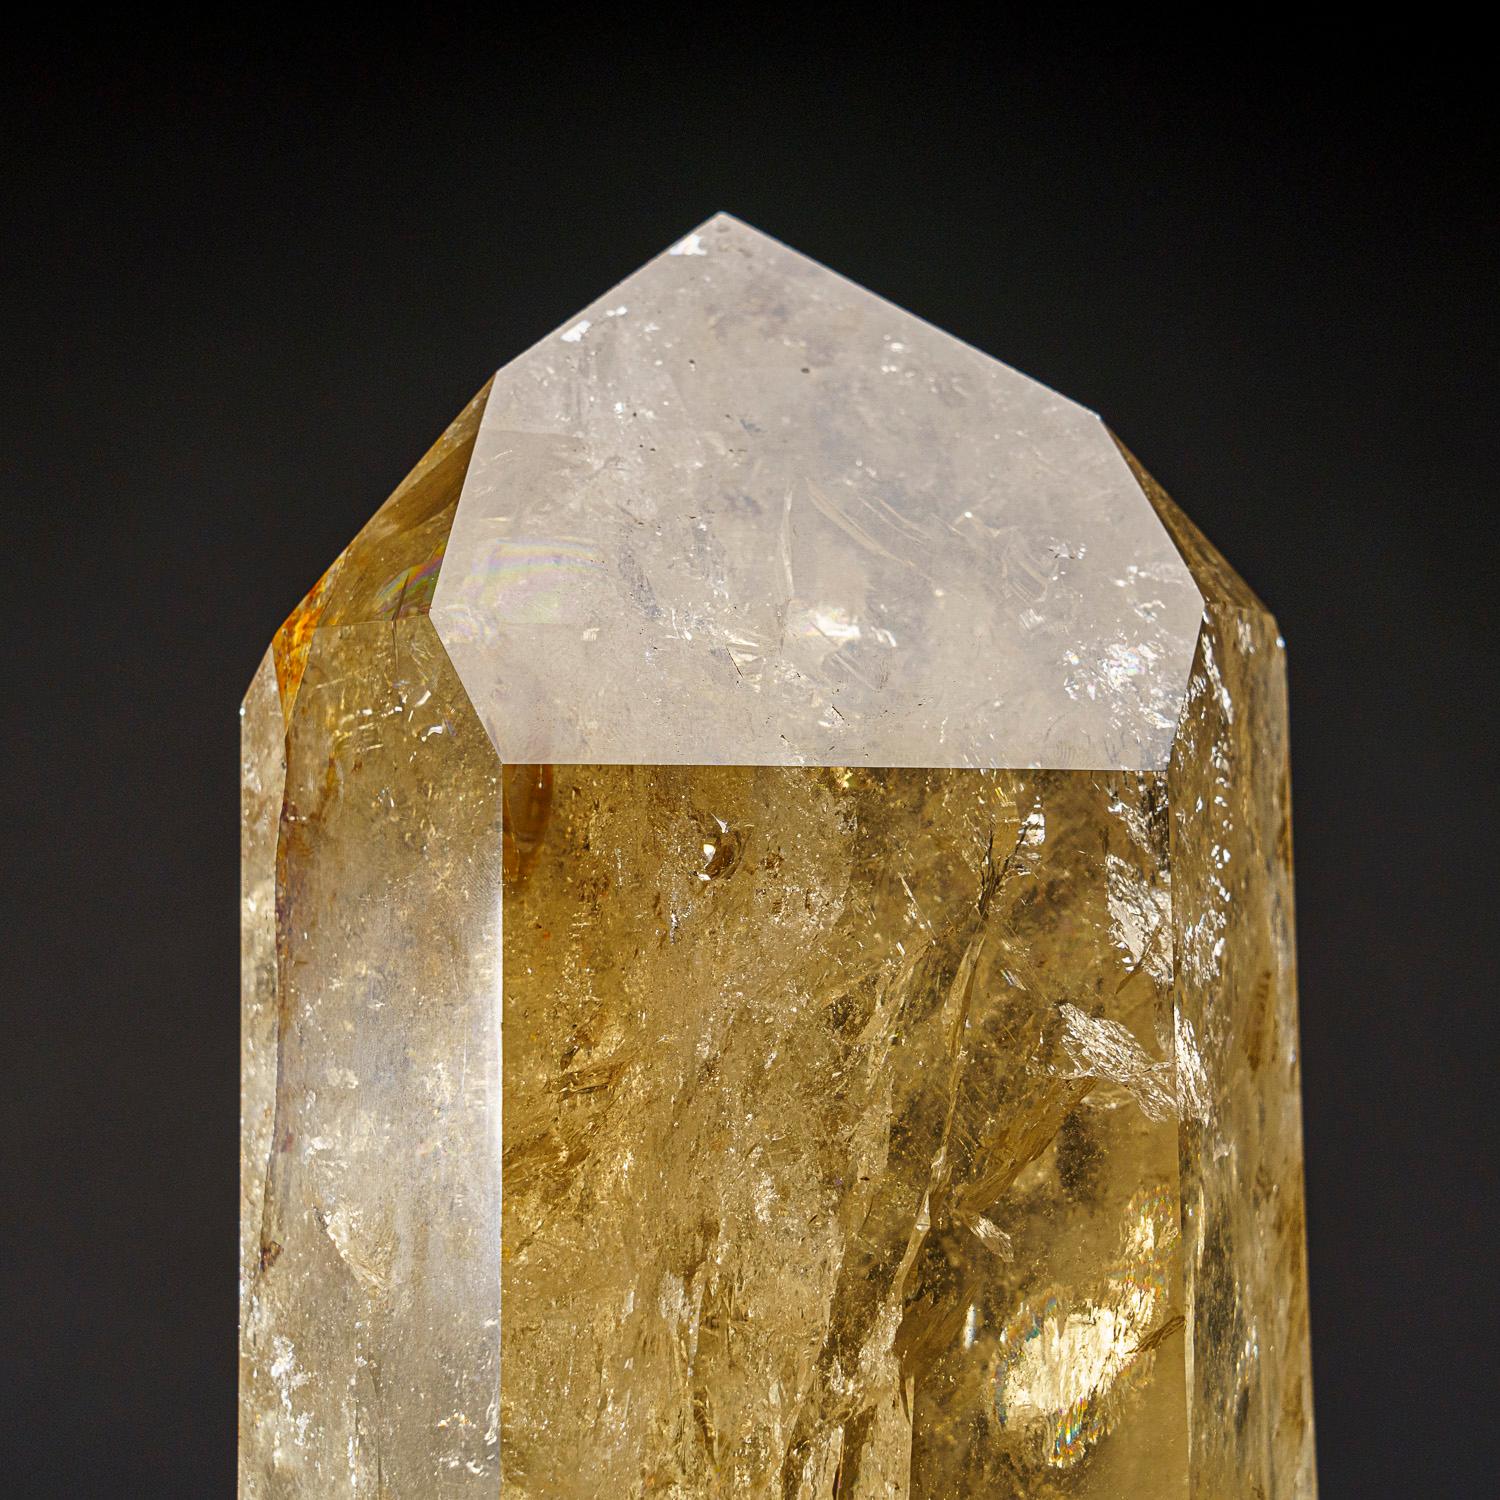 Großer Kristall in Museumsqualität aus transparentem Citrin-Quarz mit Rutil-Einschlüssen. Diese Weltklasse-Spitze ist extrem groß, mit Top-Glanz und exzellenter natürlicher rauchgelber Farbe, im Inneren ist dieser Kristall makellos.

Der Citrin kann